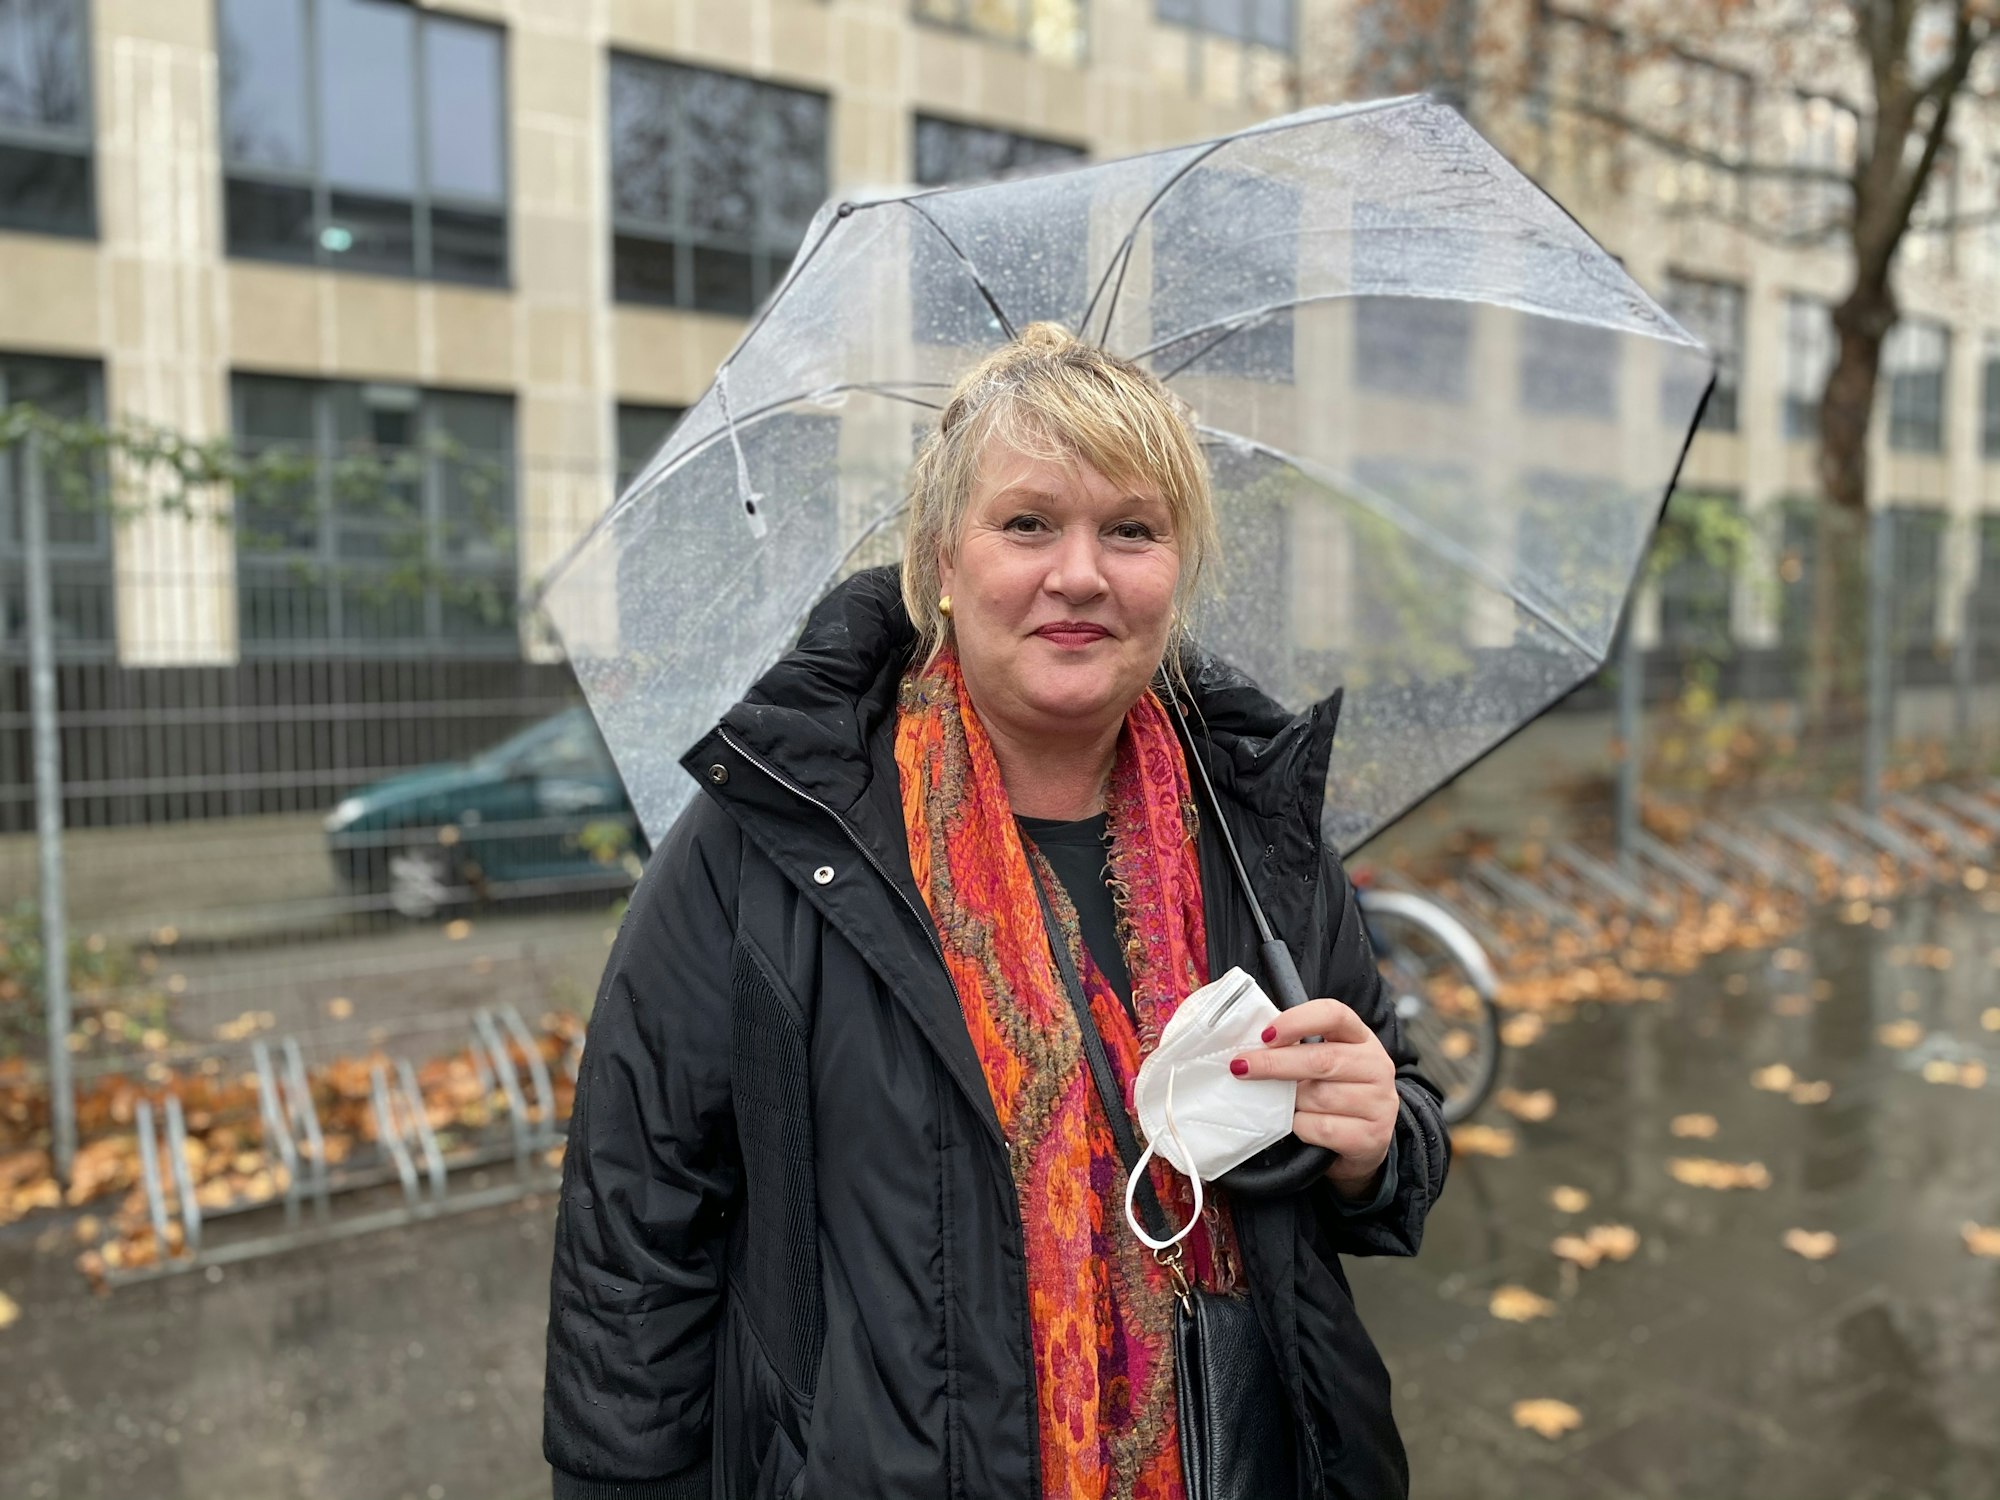 Stadt-Mitarbeiterin Claudia während eines Drehs mit einem Regenschirm.